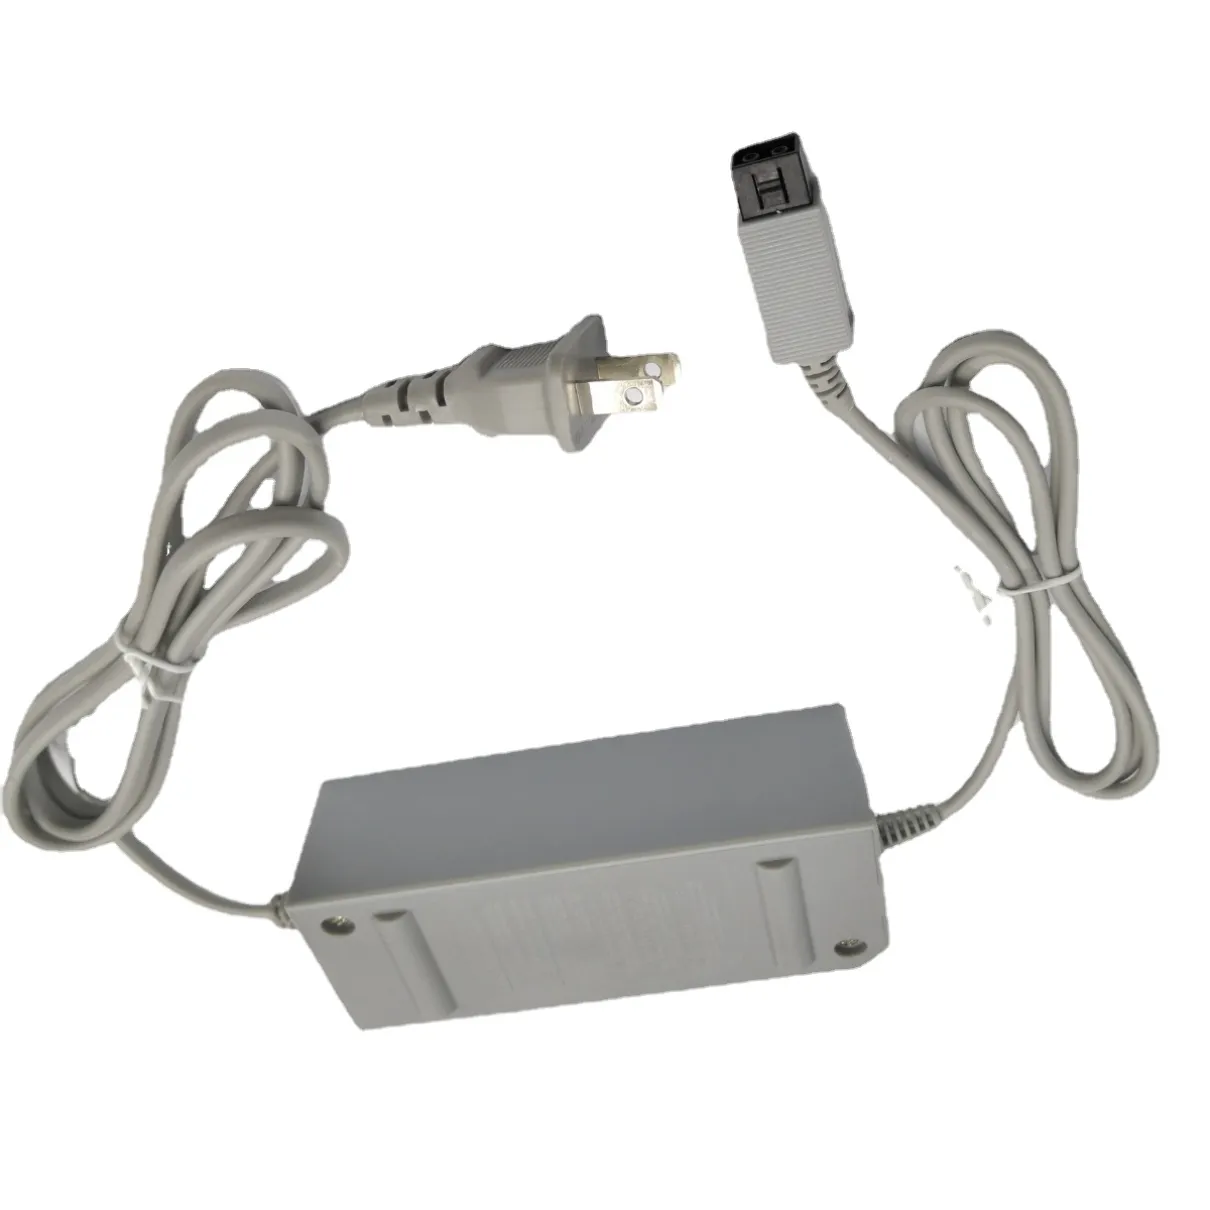 DC 12V/3.7A AC Adattatore AC Caricatore Plug US US per Nintendo Wii Console Sostituire gli accessori per cavi del caricabatterie